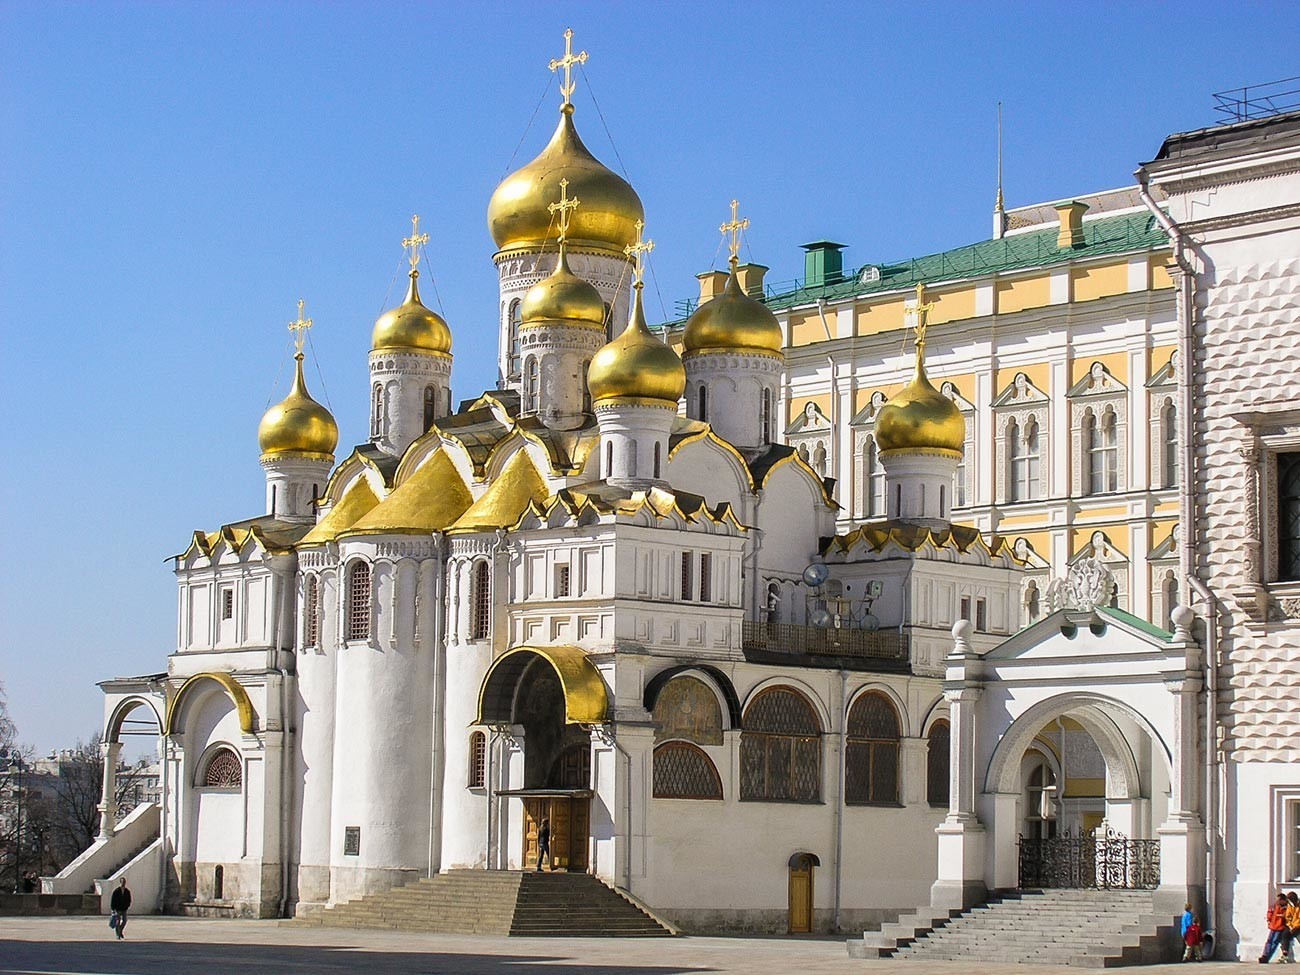 Katedral Blagoveschensky di dalam Kremlin Moskow.